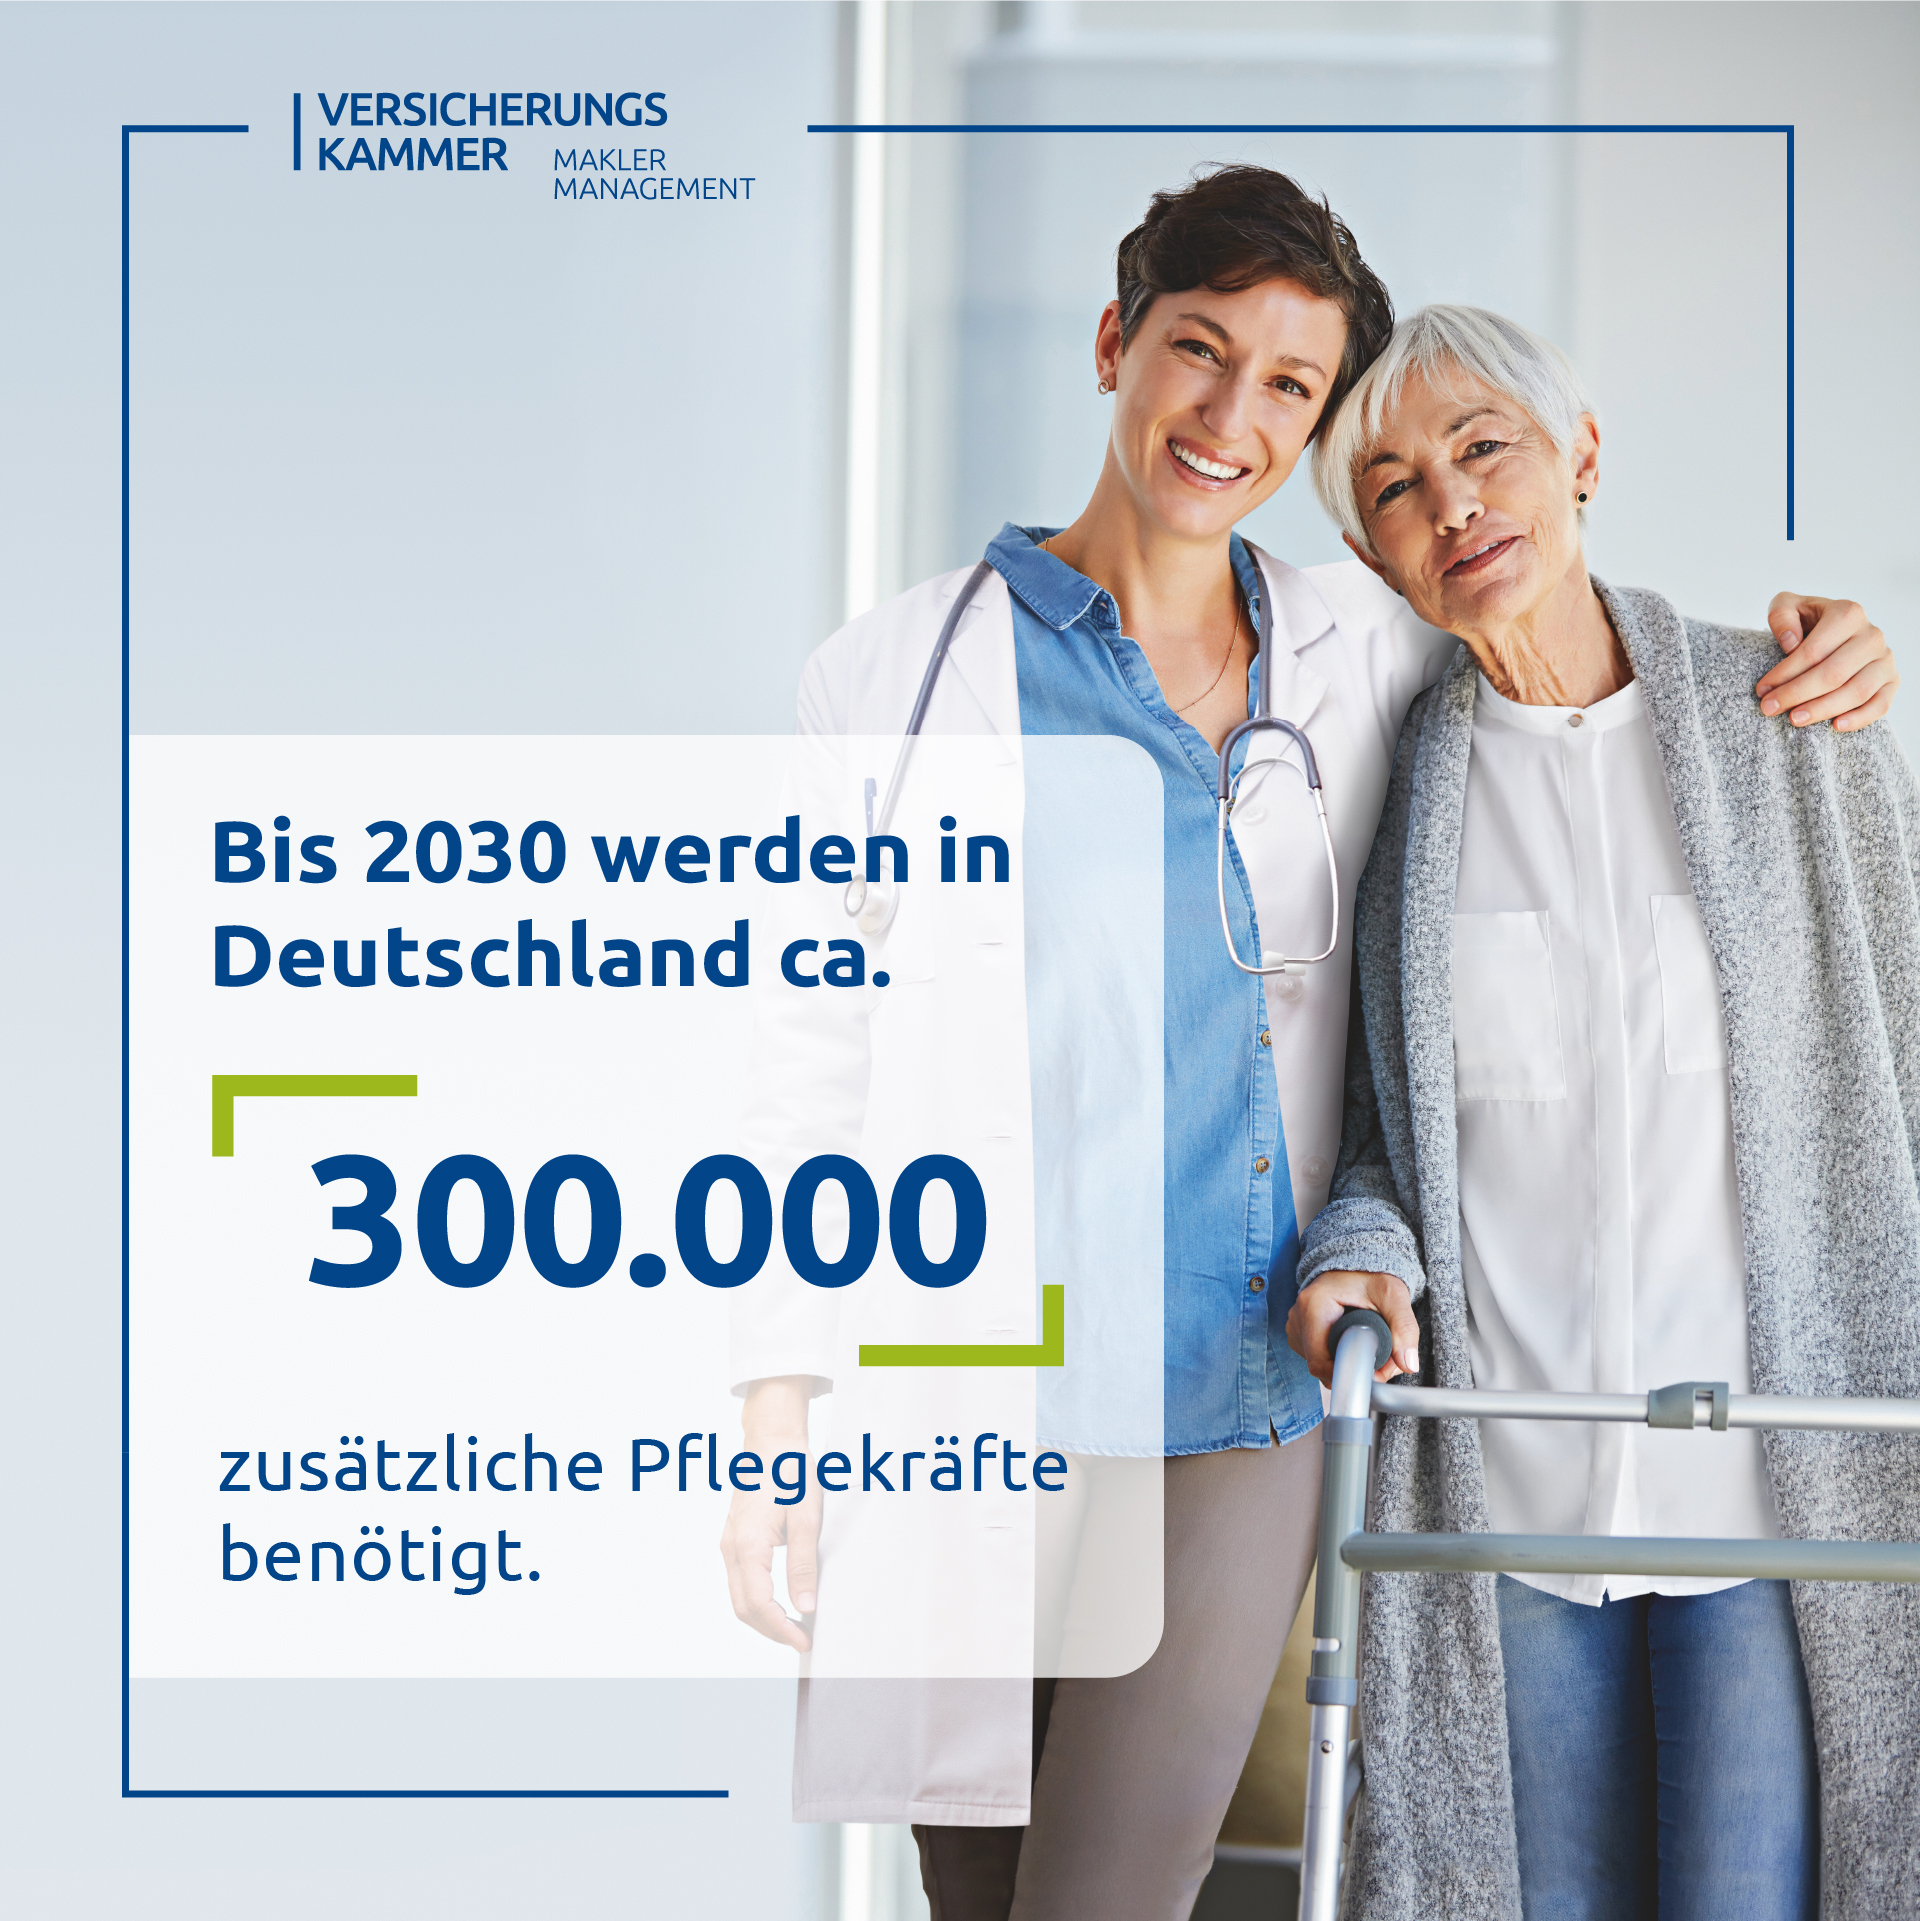 Bis 2030 werden in Deutschland ca. 300.000 zusätzliche Pflegekräfte benötigt.